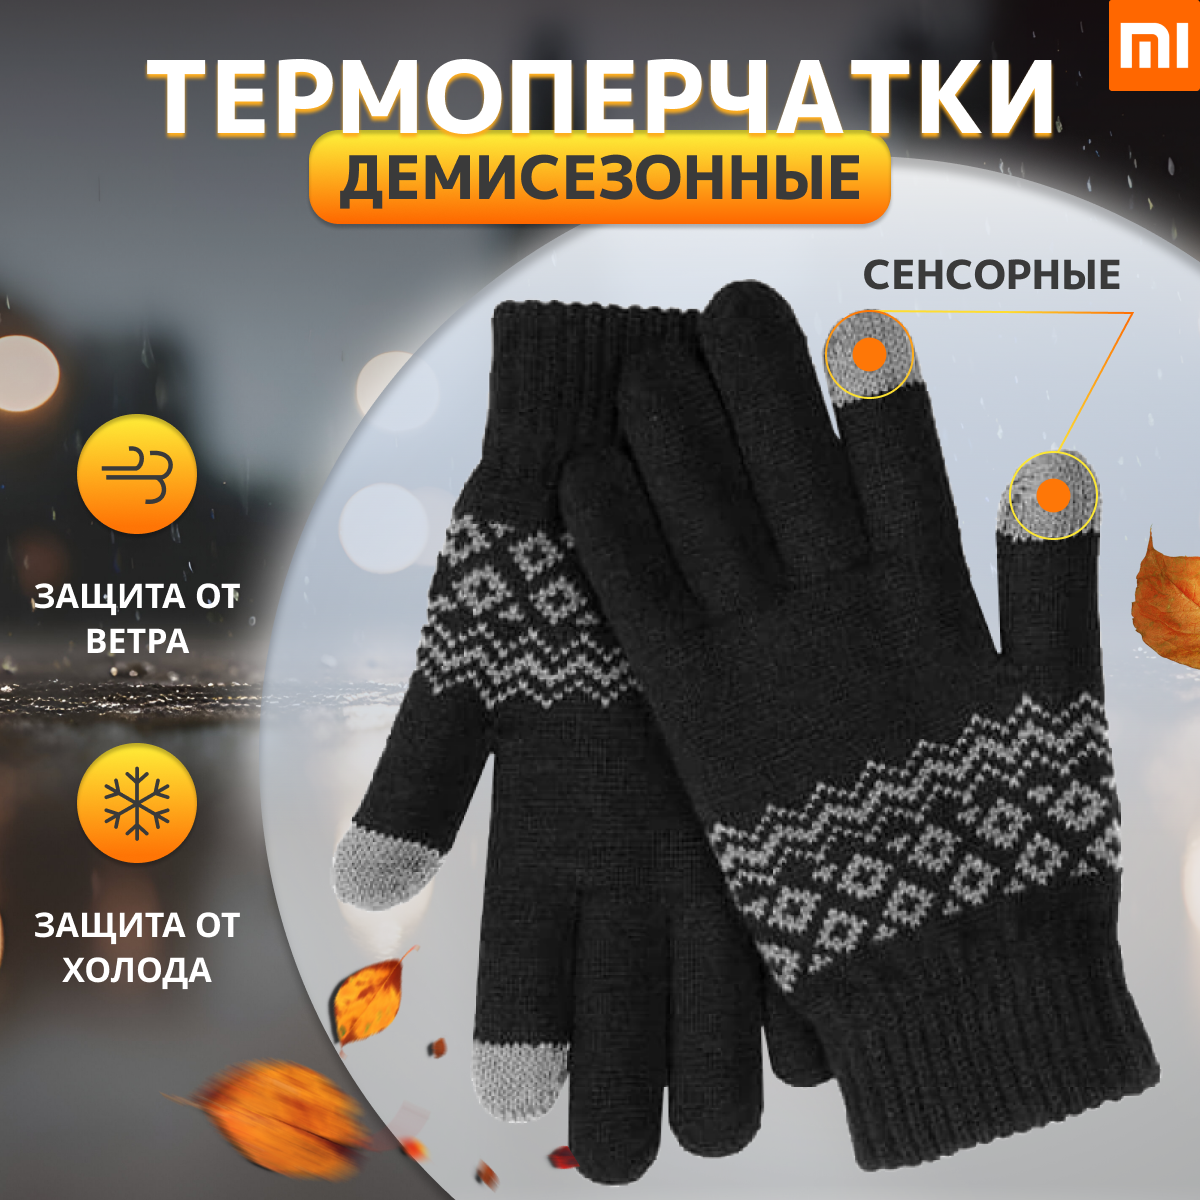 Перчатки зимние Xiaomi для сенсорных экранов FO Touch Wool Gloves Black ( Термоперчатки демисезонные трикотажные )